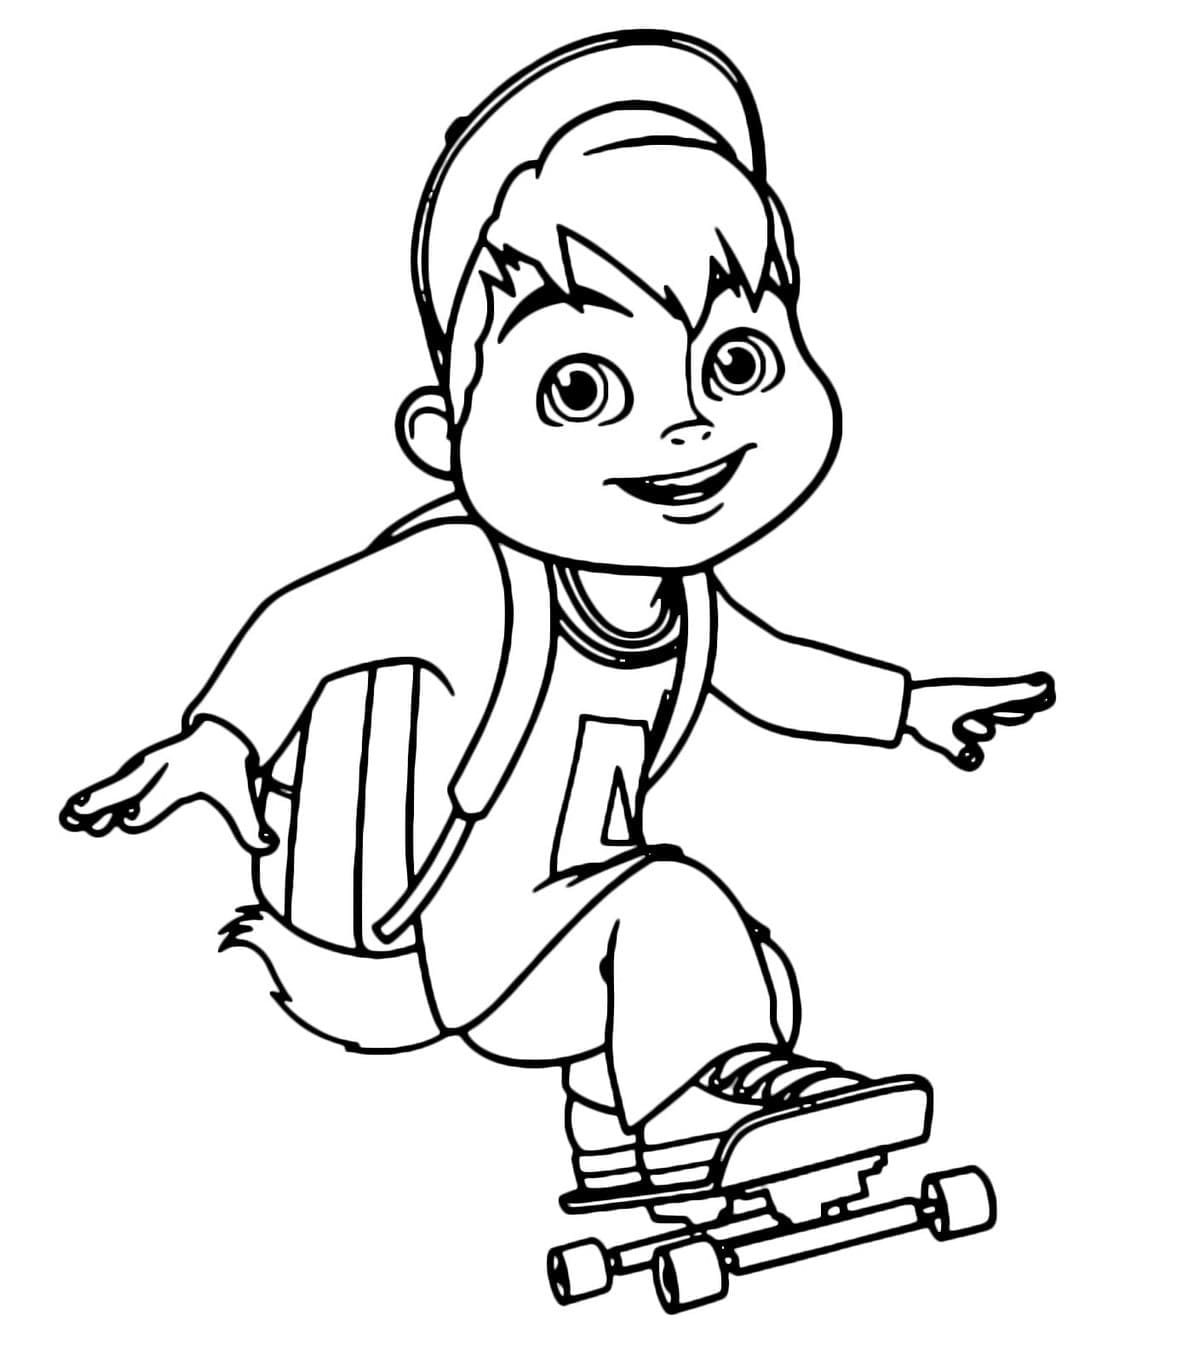 Alvin Fait du Skateboard coloring page